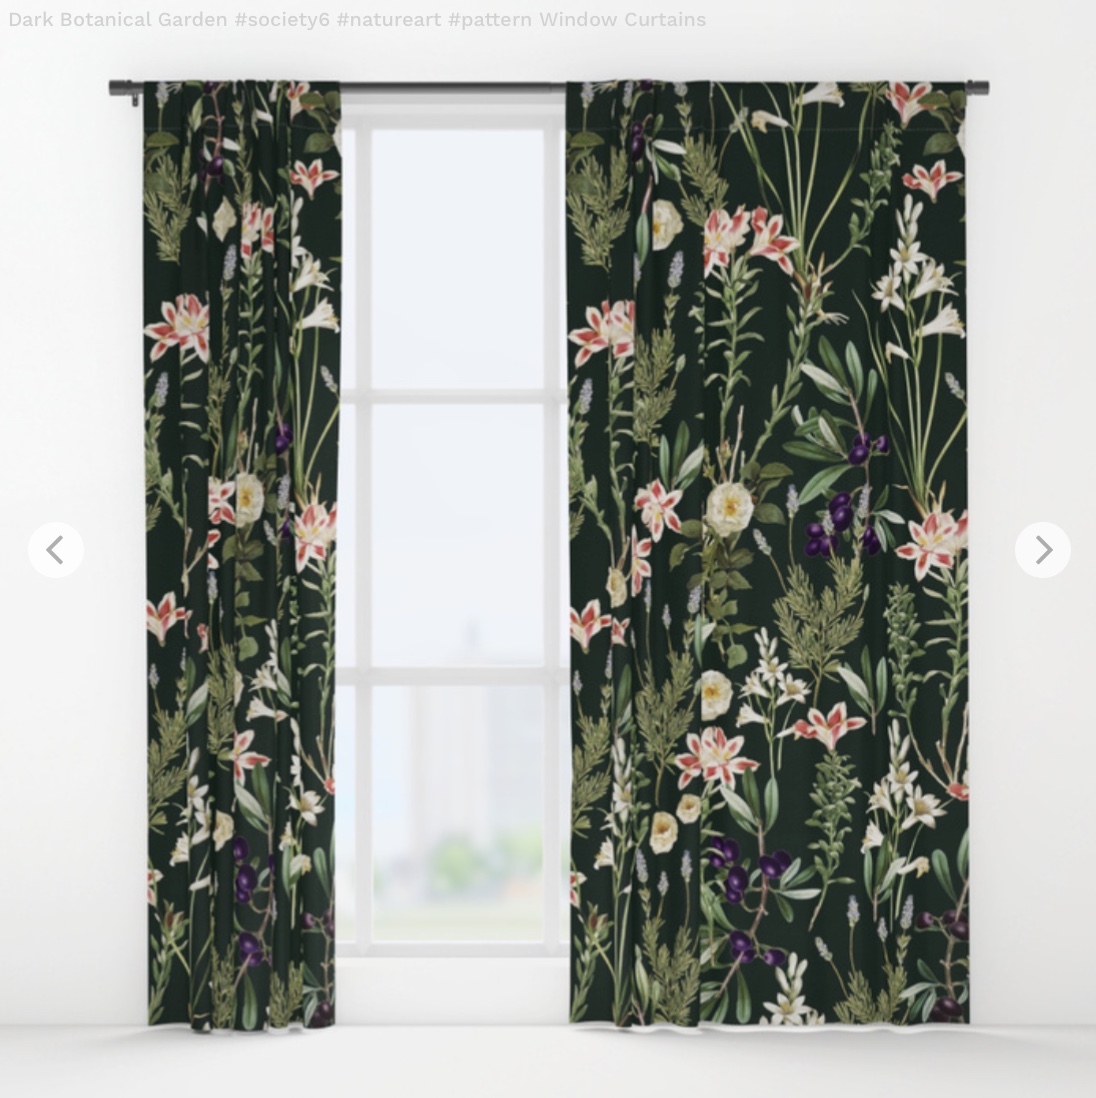 Dark Botanical Garden - pattern Window Curtains by 83oranges | Society6